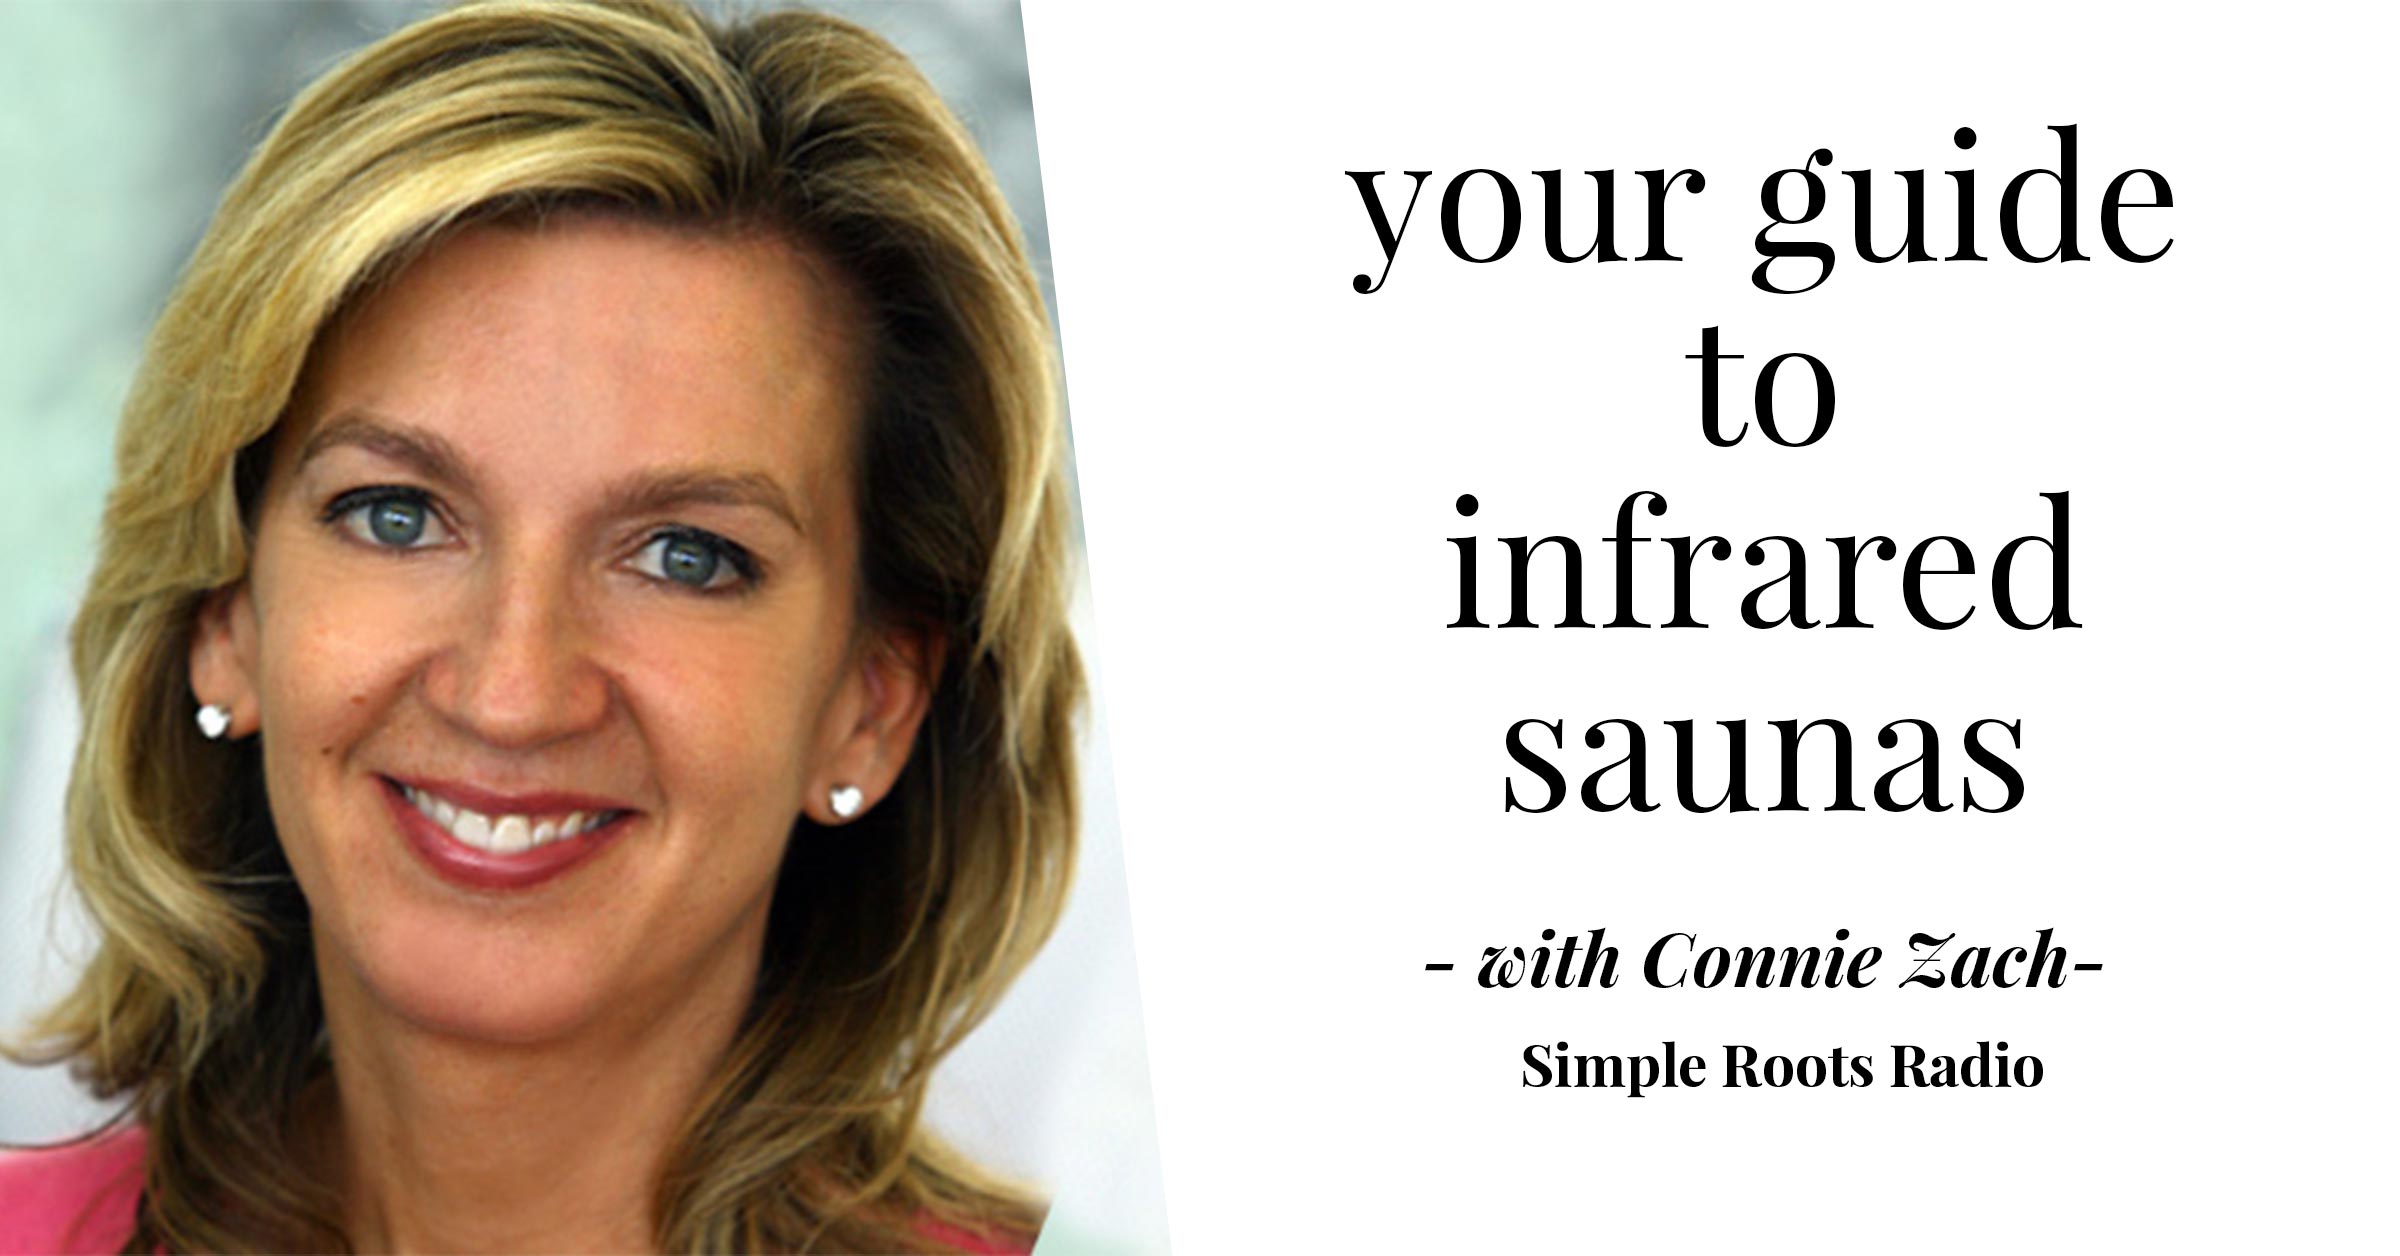 Your Guide to Infrared Saunas | simplerootswellness.com #podcast #saunas #healthtips #hormones